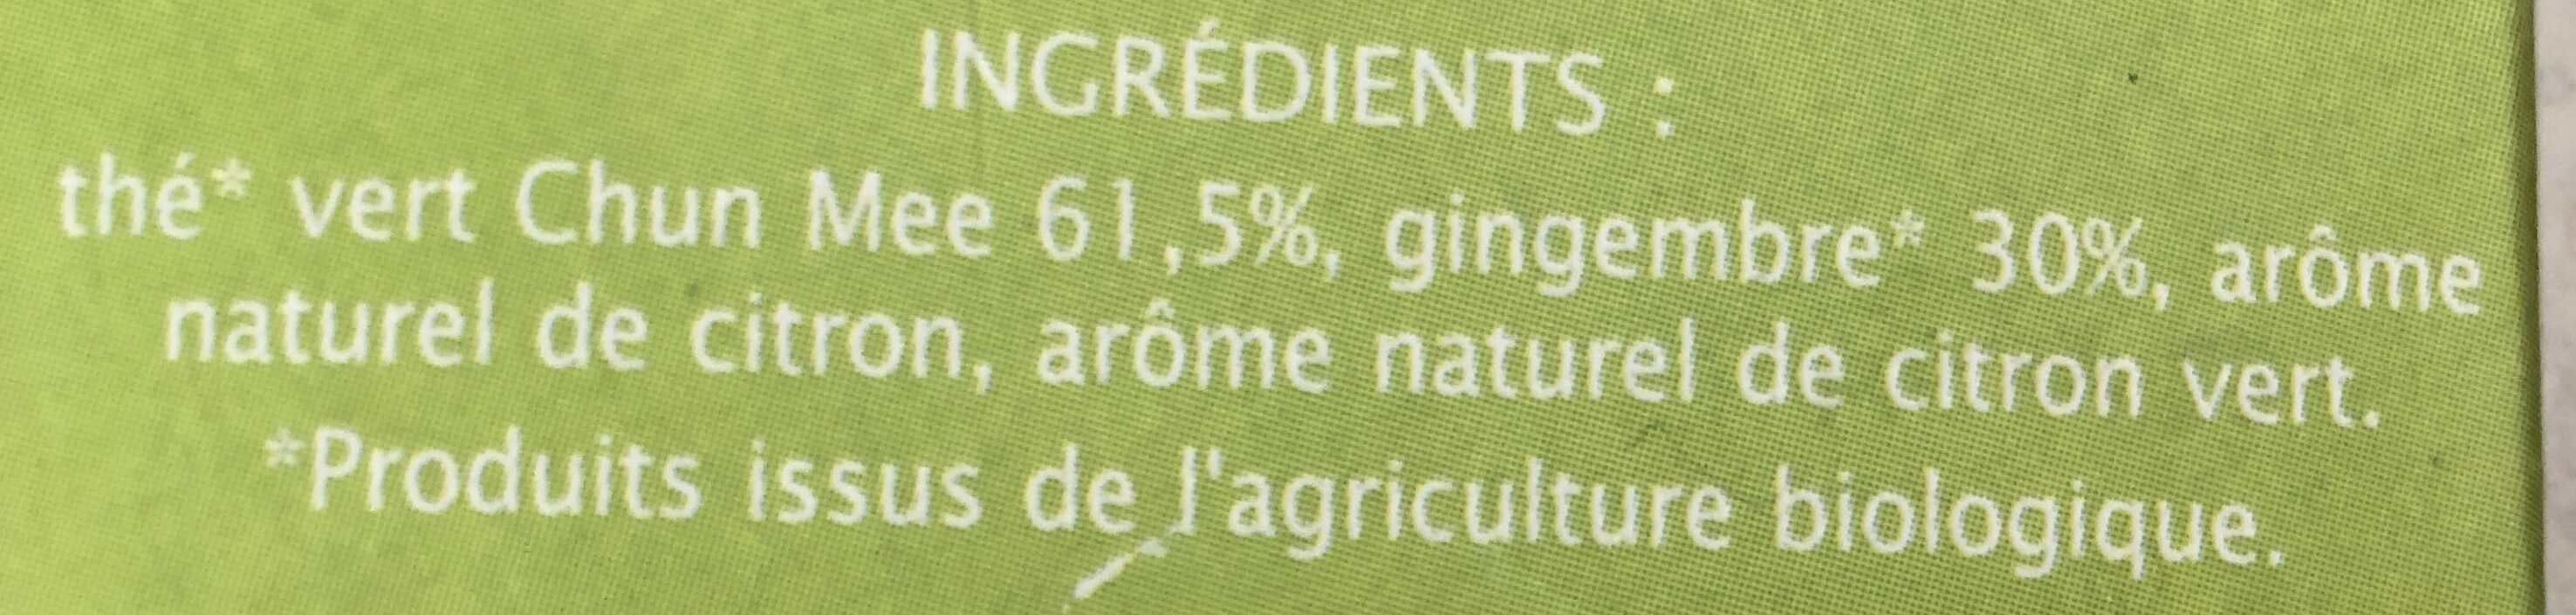 Thé Vert saveur Gimgembre Citron vert - Ingrédients